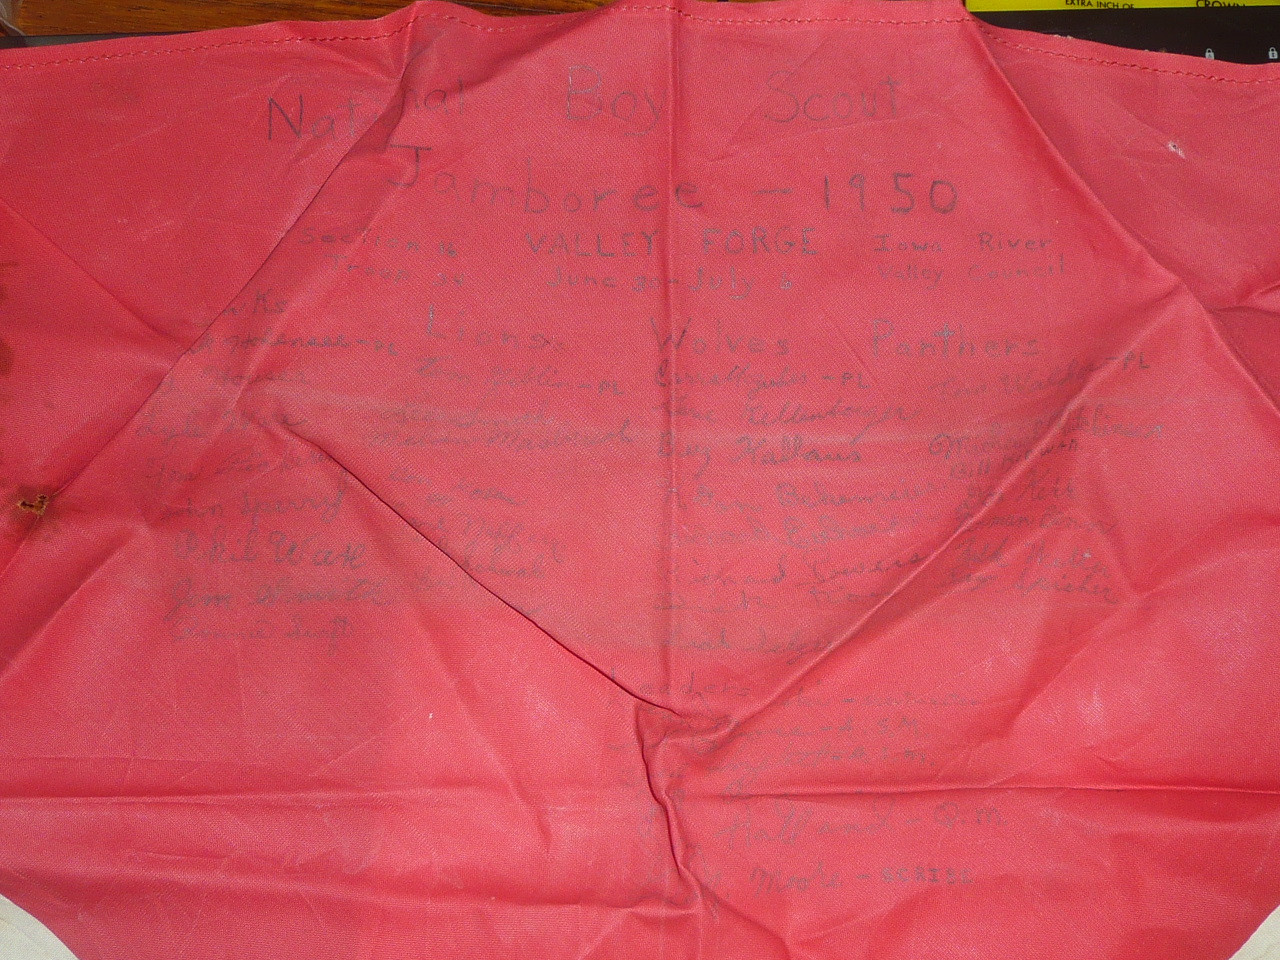 1950 National Jamboree Satin Neckerchief, Signatures of contingent members